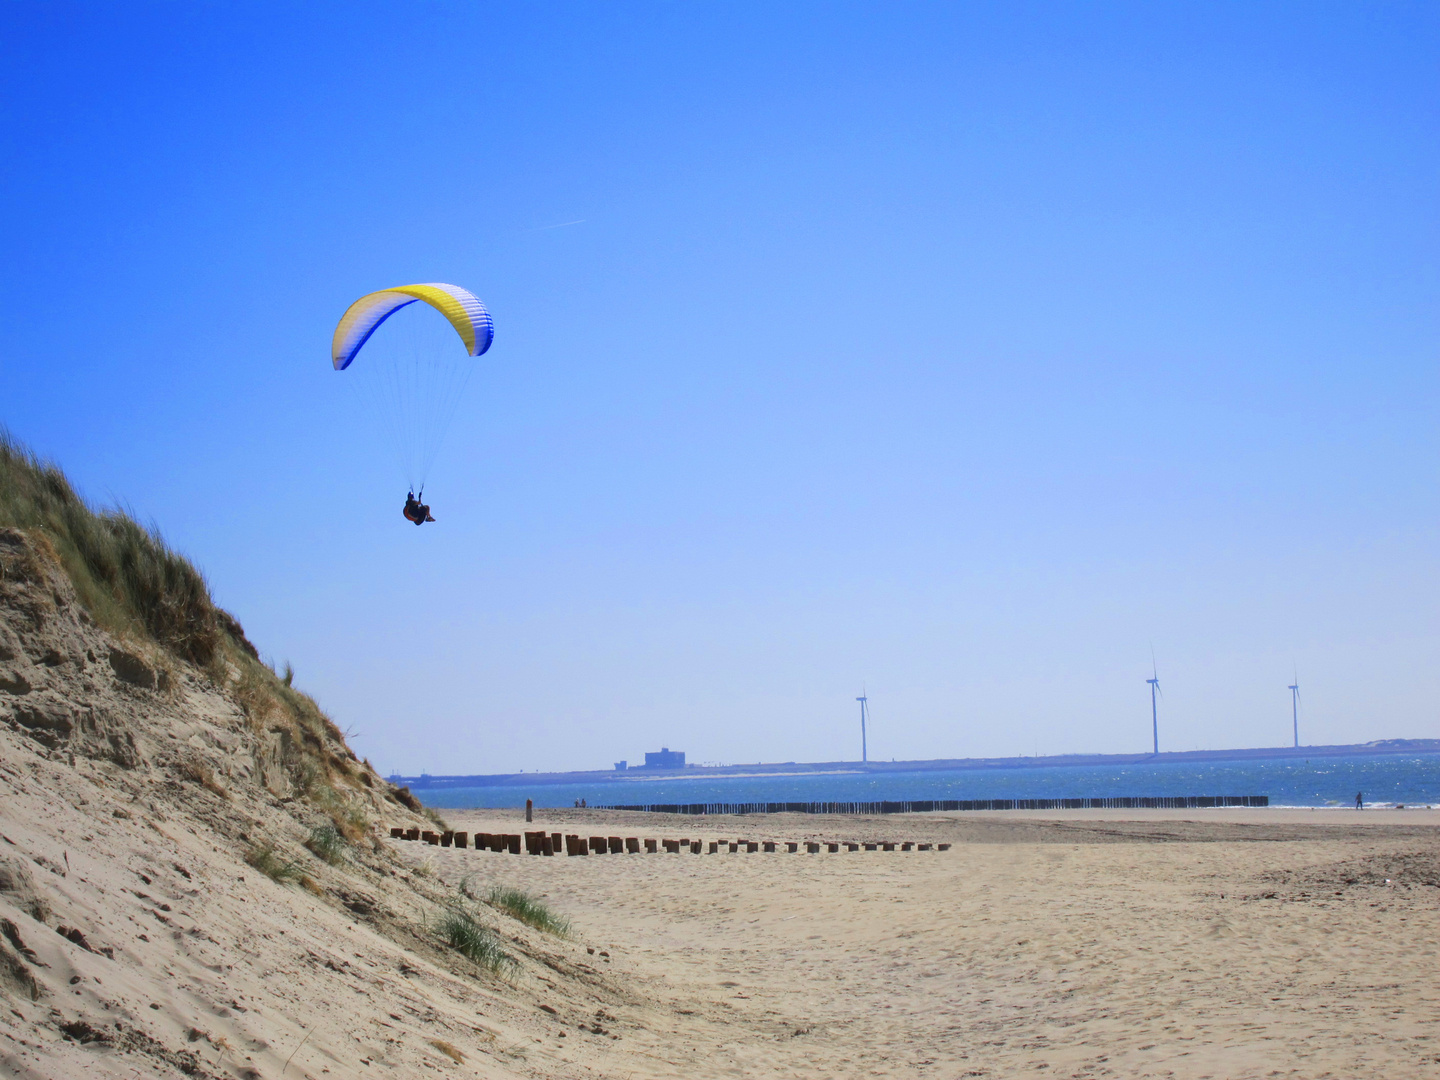 Paraglider am Strand